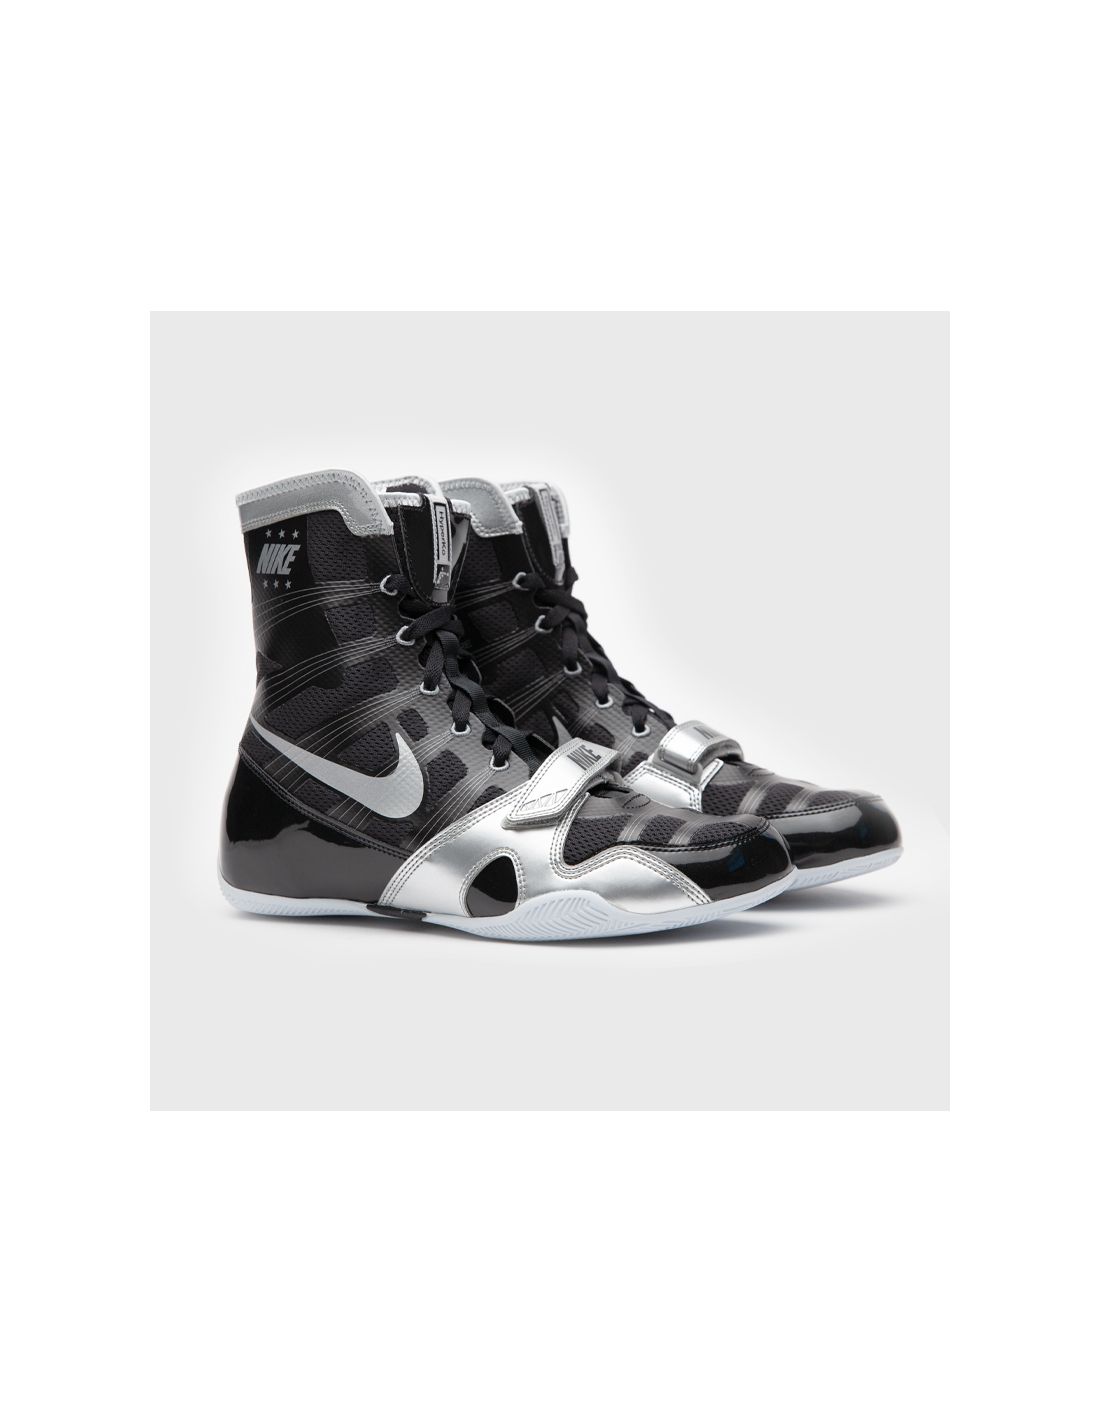 Botas de boxeo Nike Hyperko negro/plata